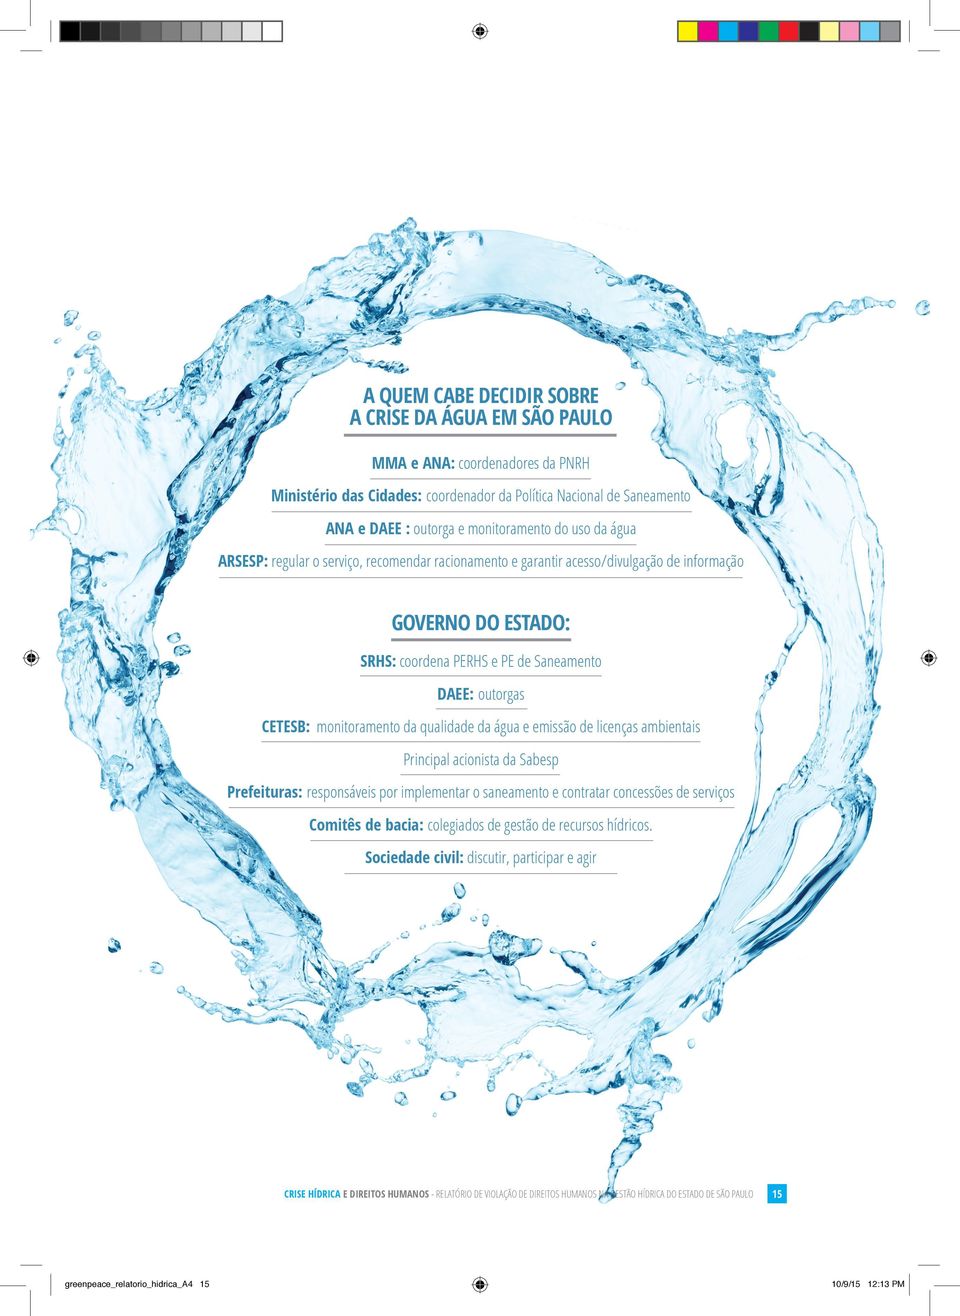 Saneamento DAEE: outorgas CETESB: monitoramento da qualidade da água e emissão de licenças ambientais Principal acionista da Sabesp Prefeituras: responsáveis por implementar o